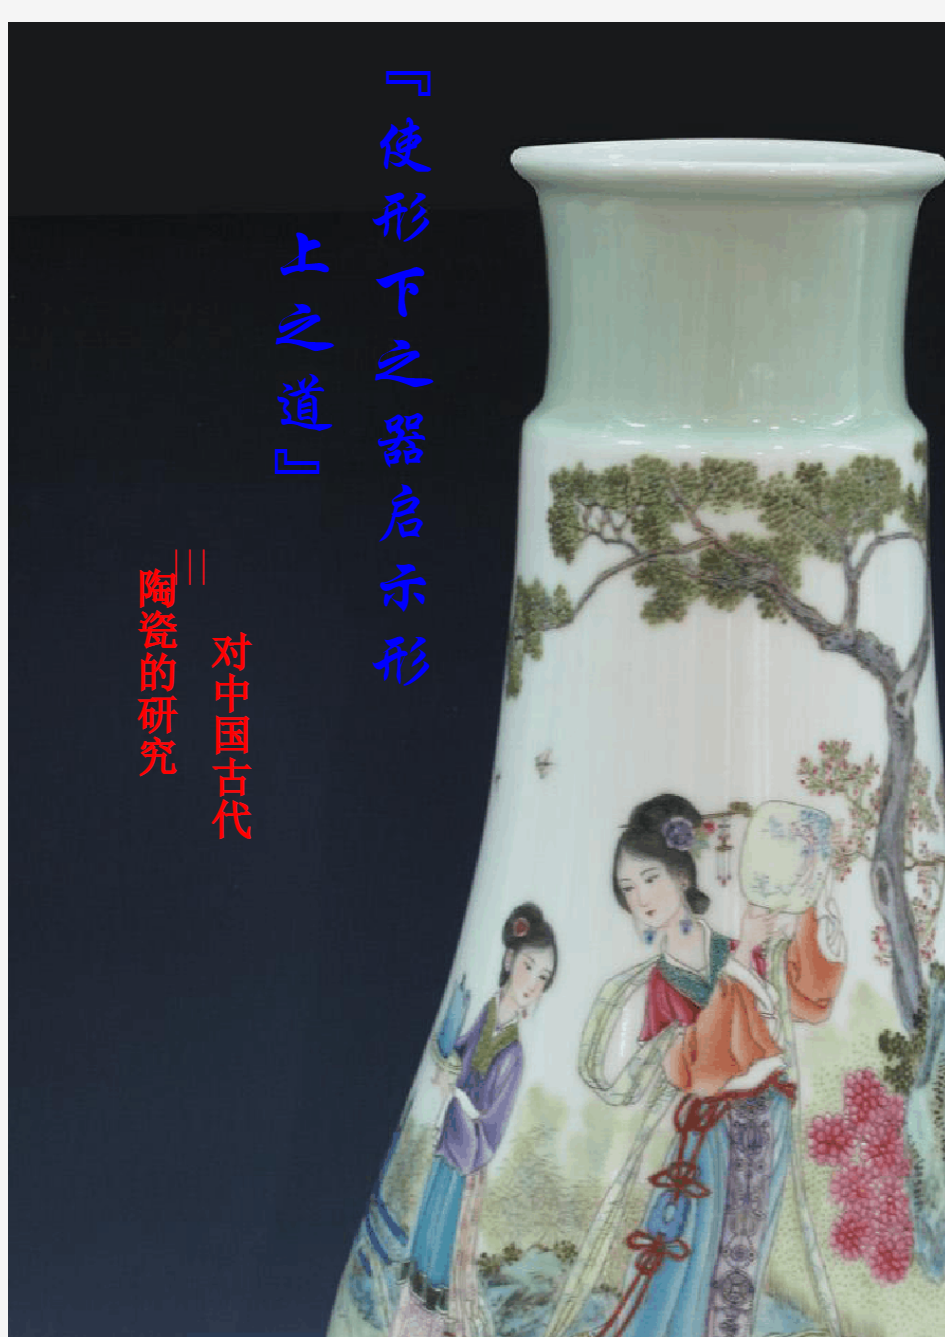 对于中国古代陶瓷的研究报告